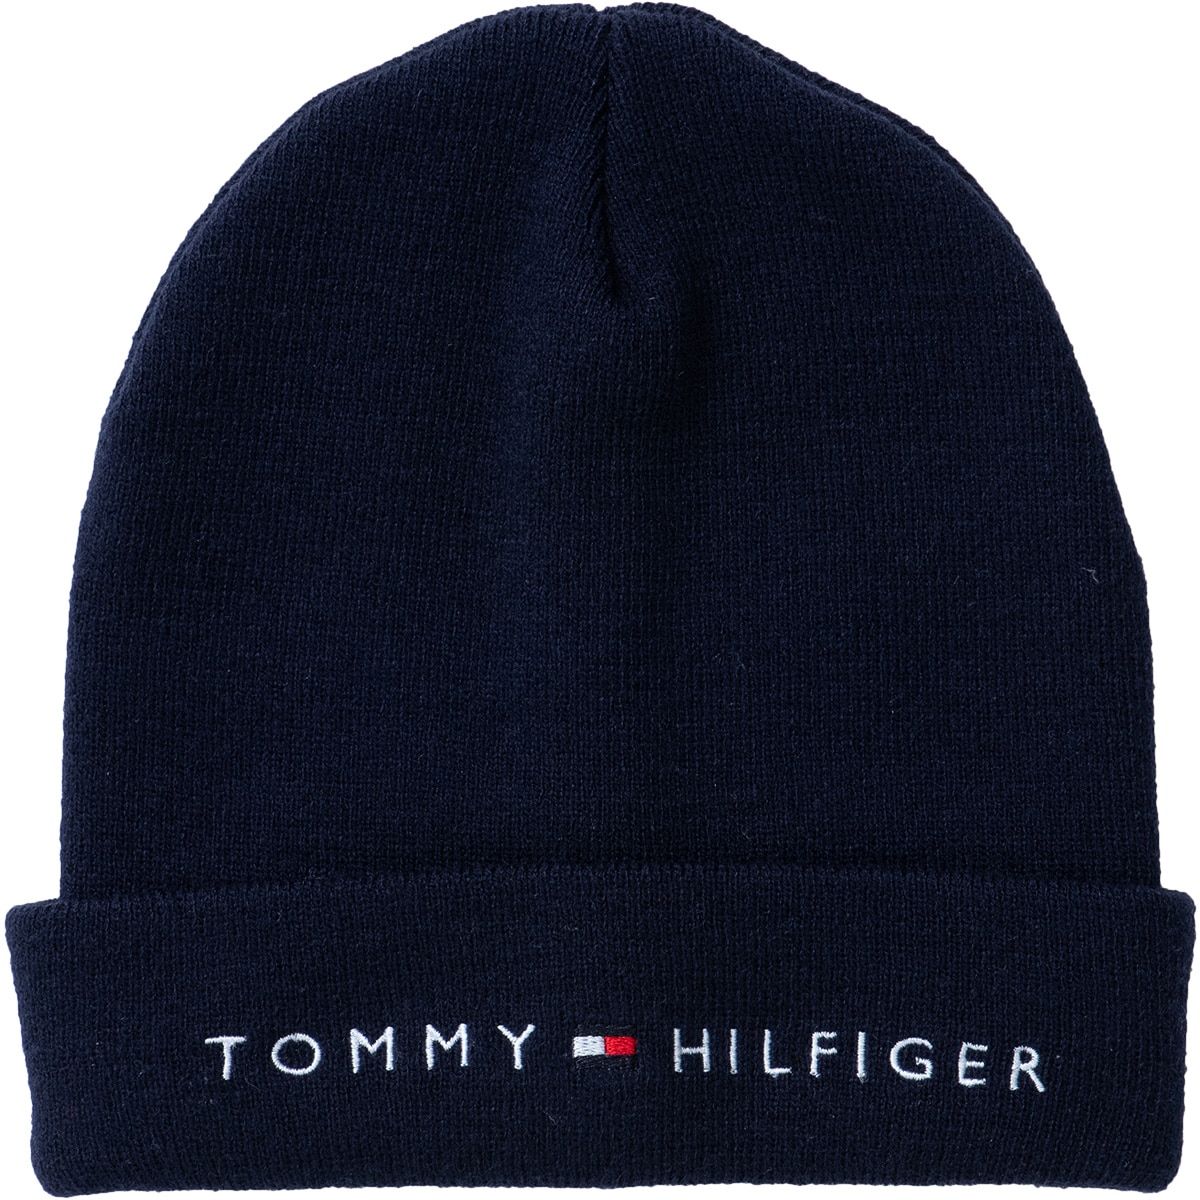 ビーニー(【男性】その他帽子)|TOMMY HILFIGER GOLF(トミー